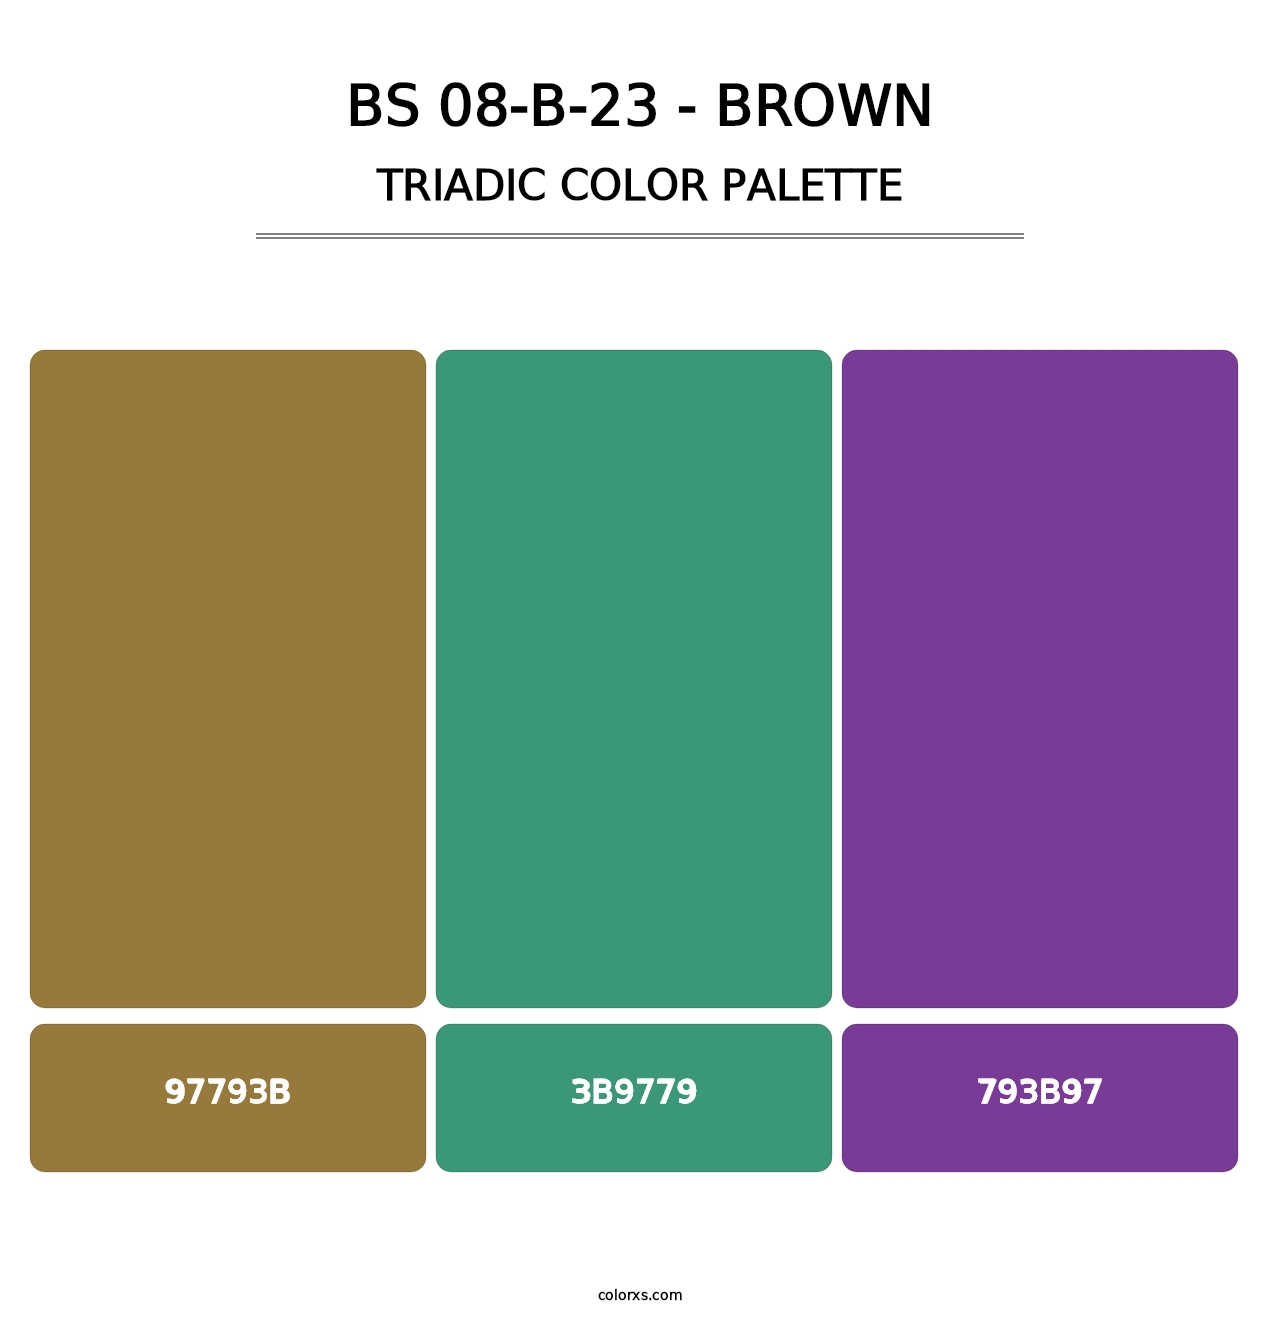 BS 08-B-23 - Brown - Triadic Color Palette